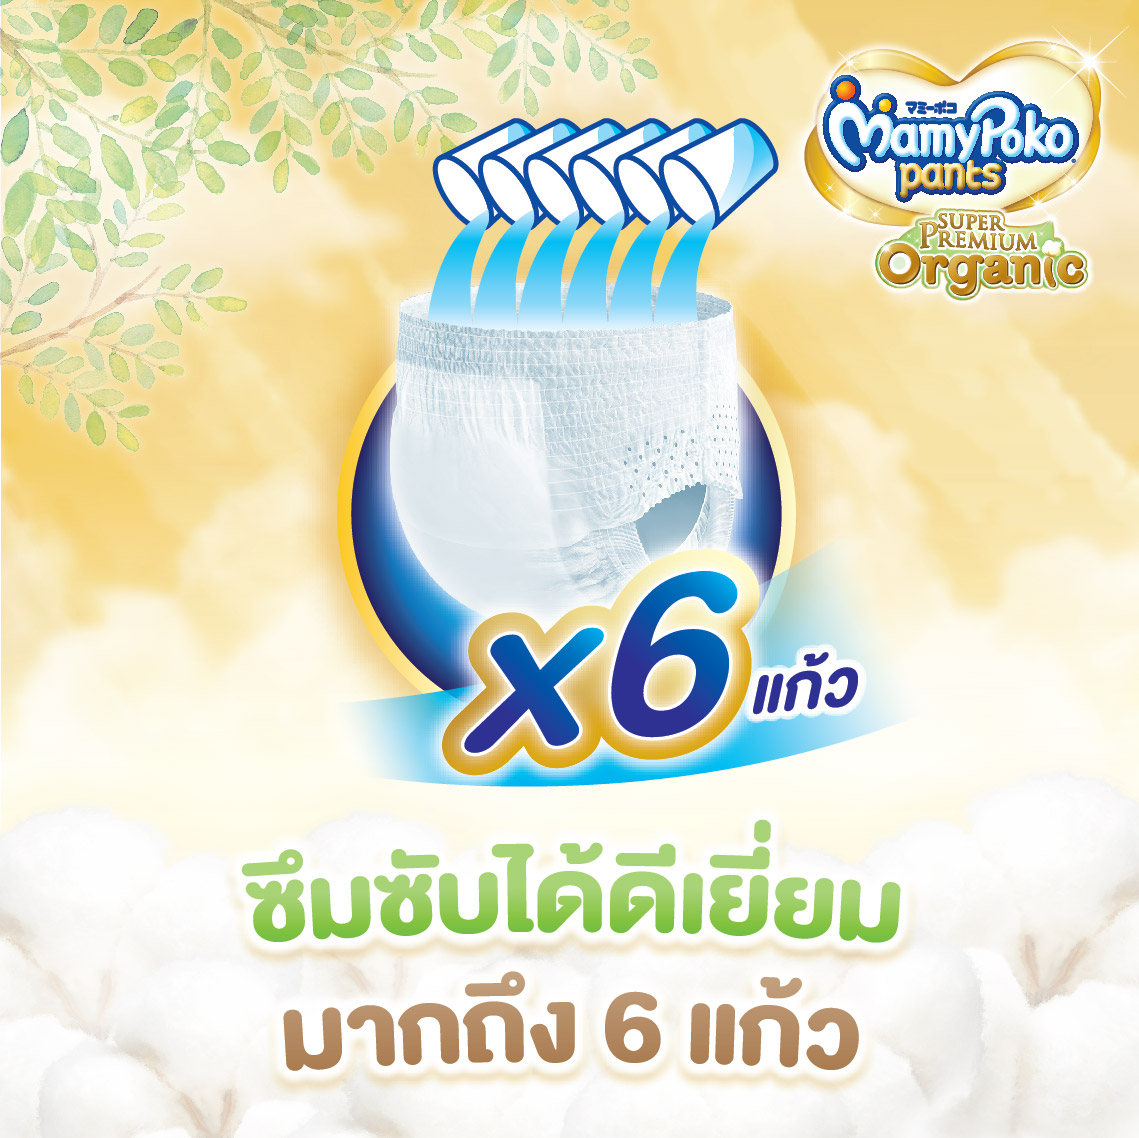 [ส่งฟรี มีทุกไซส์] ขายยกลัง !! Mamypoko Pants Organic  กางเกงผ้าอ้อม มามี่โพโค แพ้นท์ ออร์แกนิค ไซส์ S-XXL แพ็ค 3 